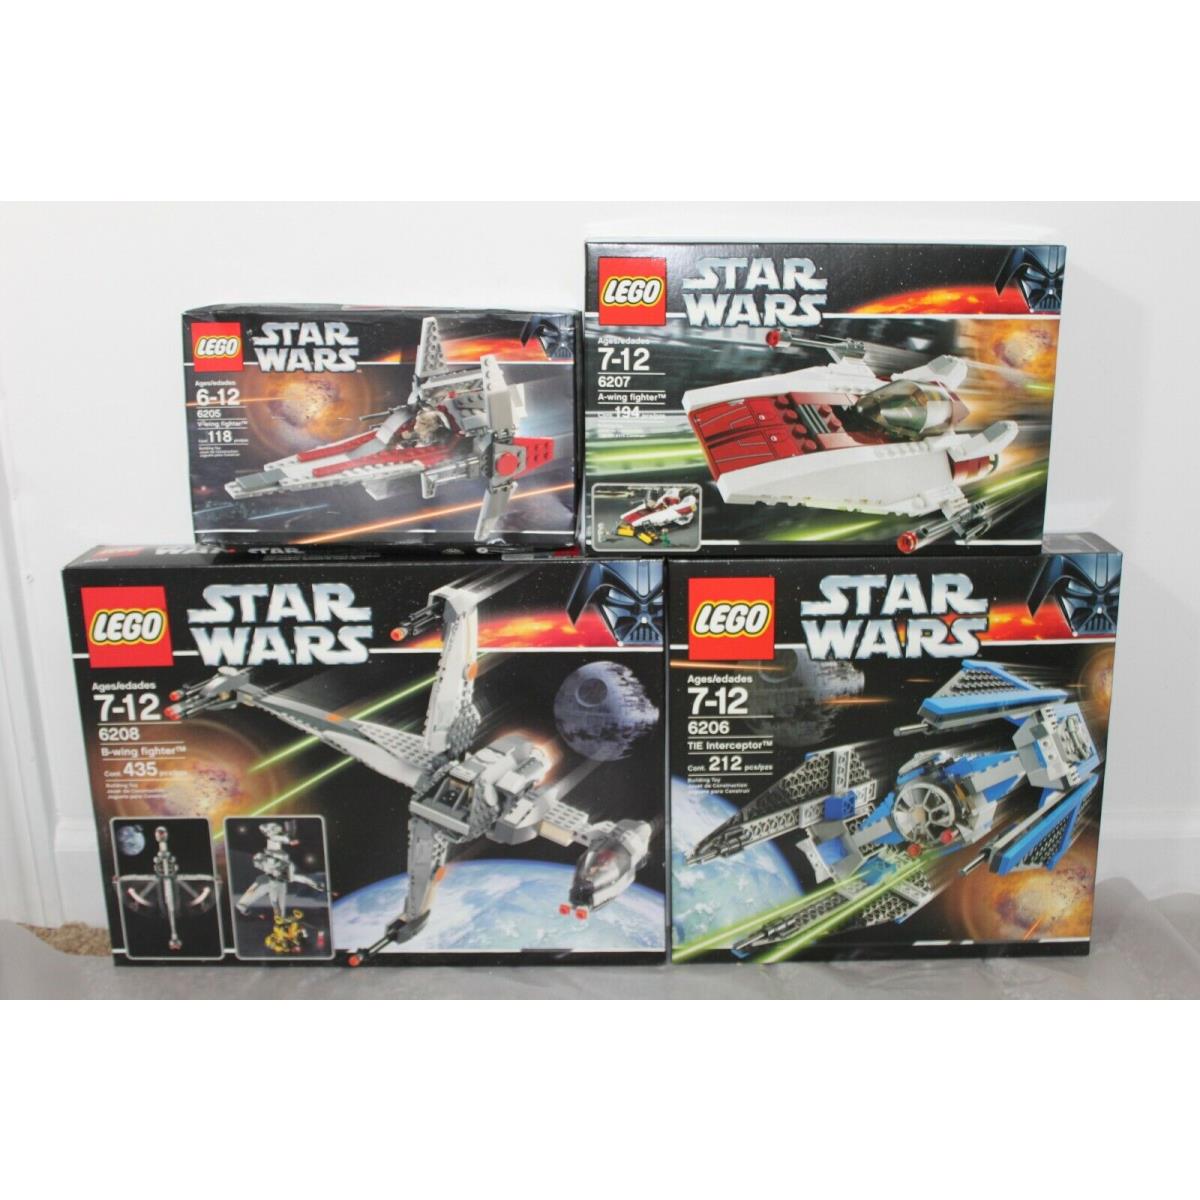 4-SET 2006 Star Wars Lego 6205 6206 6207 6208 Rebel Empire Ships Revenge